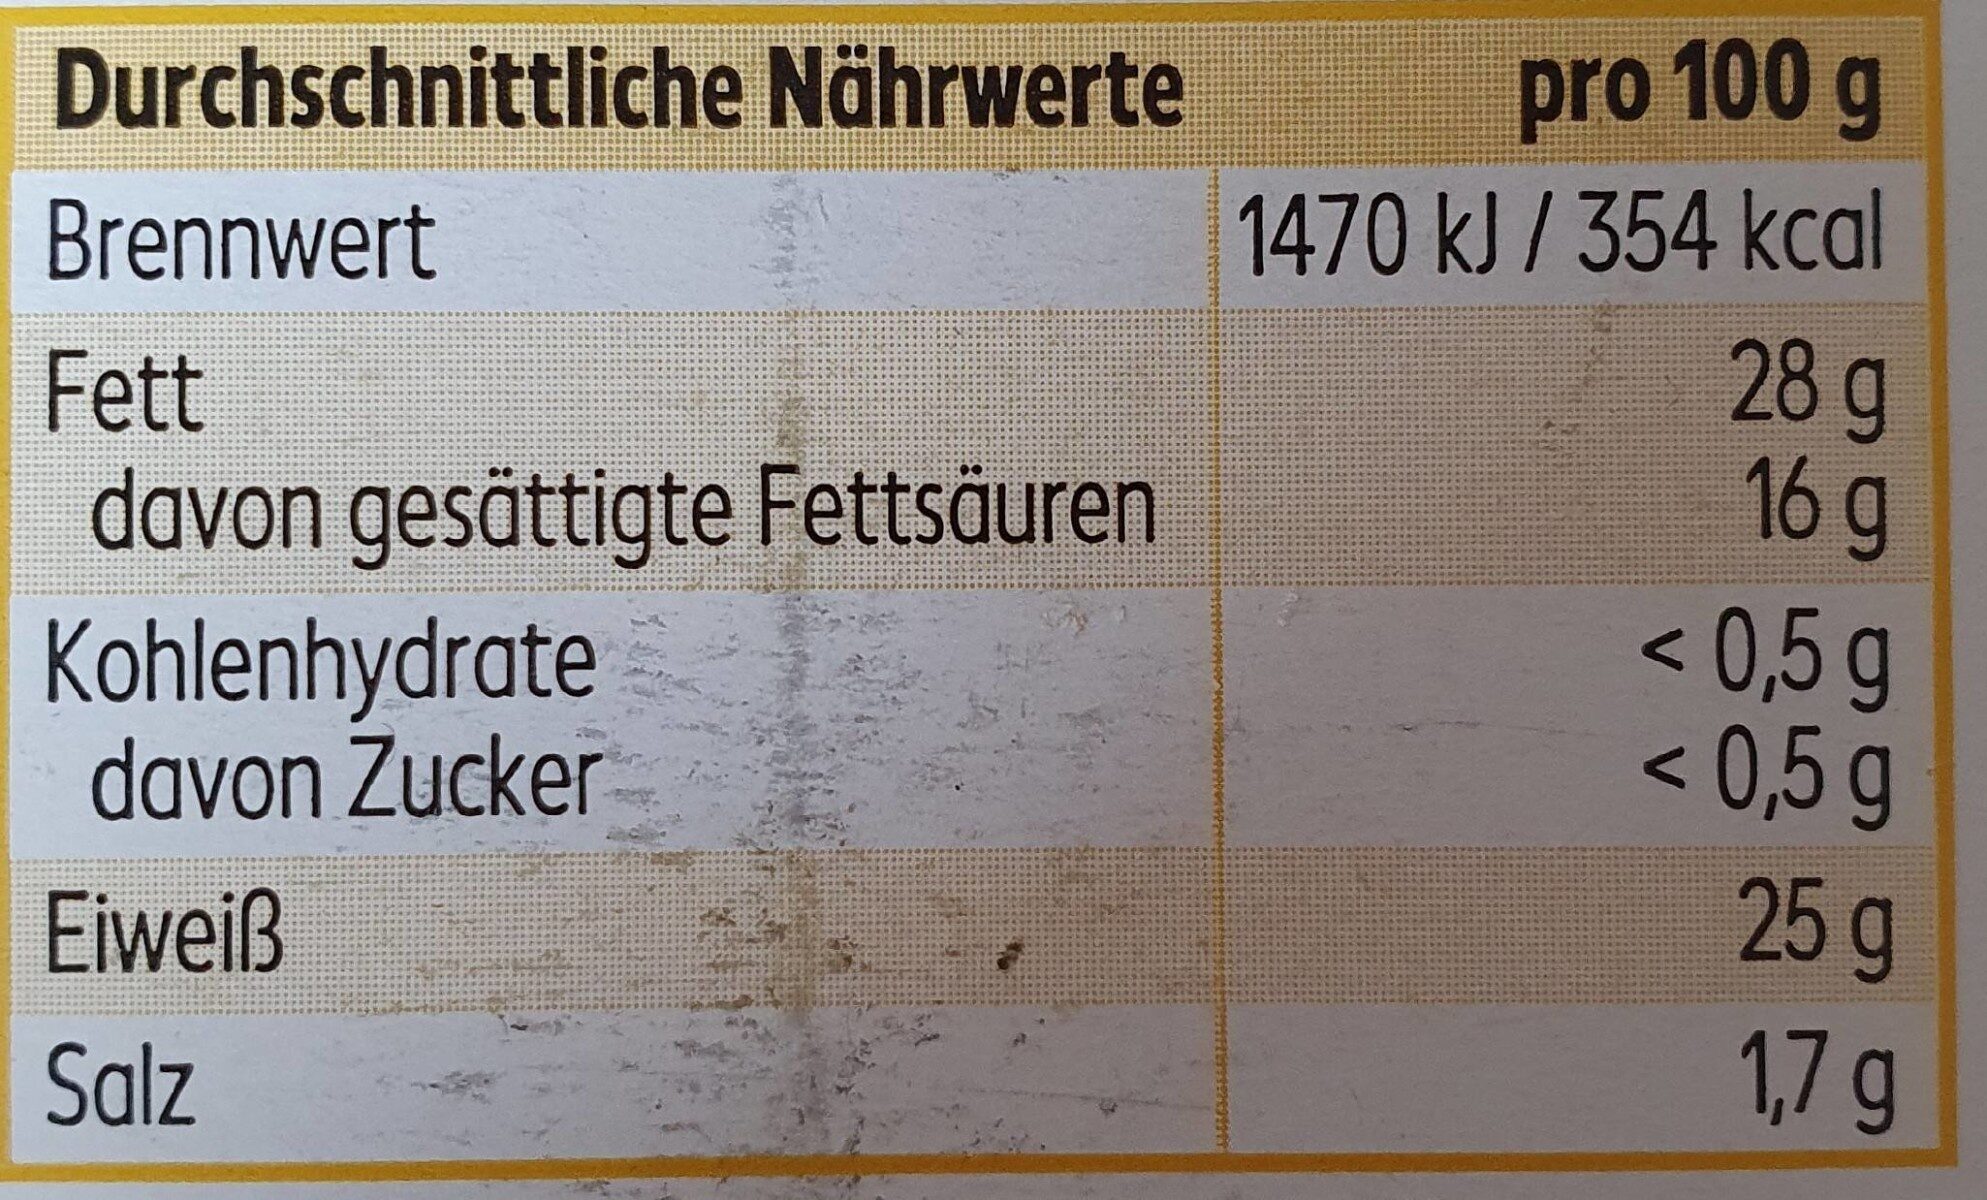 Butterkäse in Scheiben (mild) - Nutrition facts - de